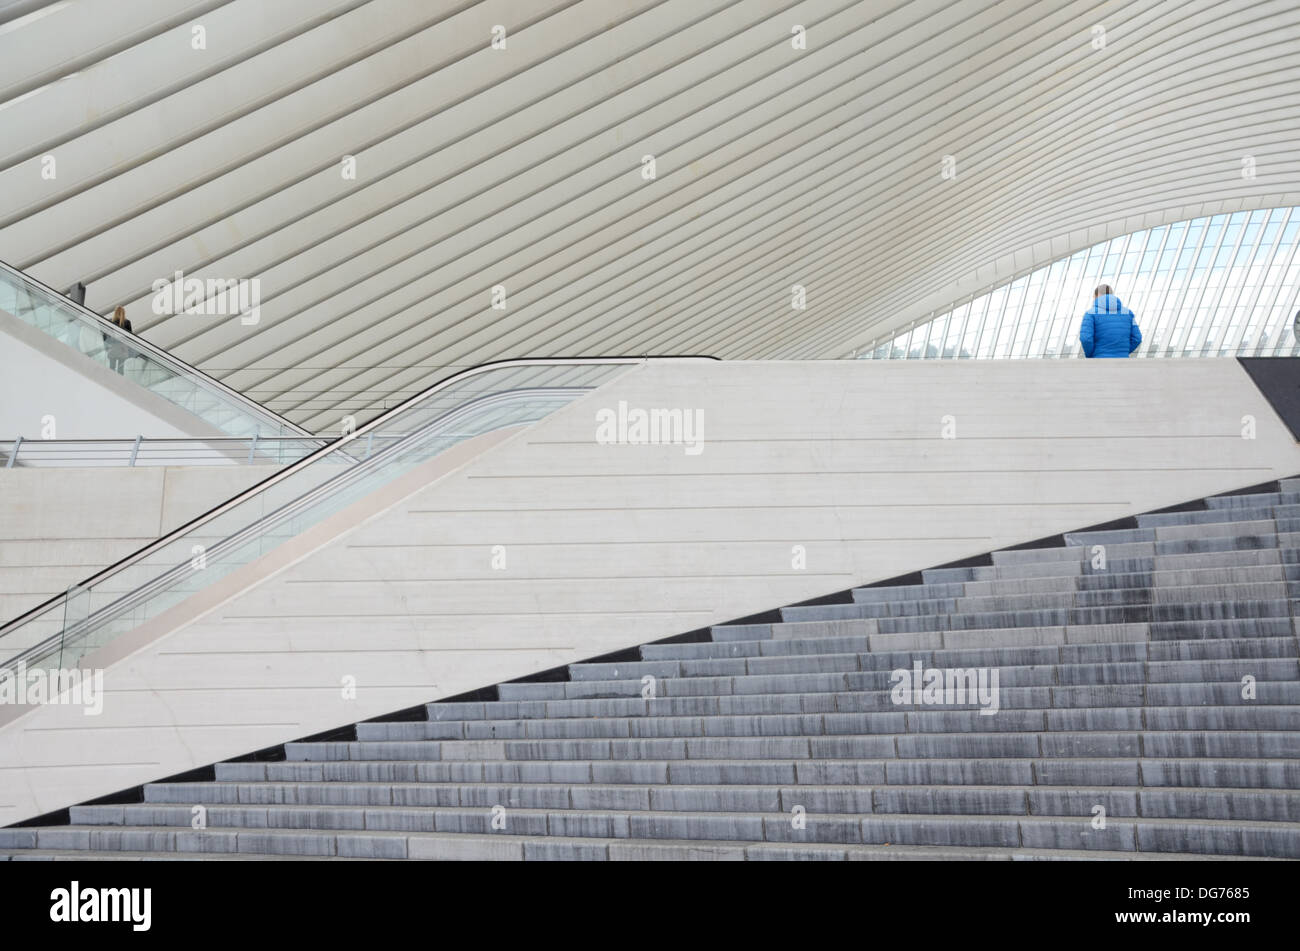 La gare de Liège-Guillemins conçue par l'architecte Santiago Calatrava à Liège Belgique Banque D'Images